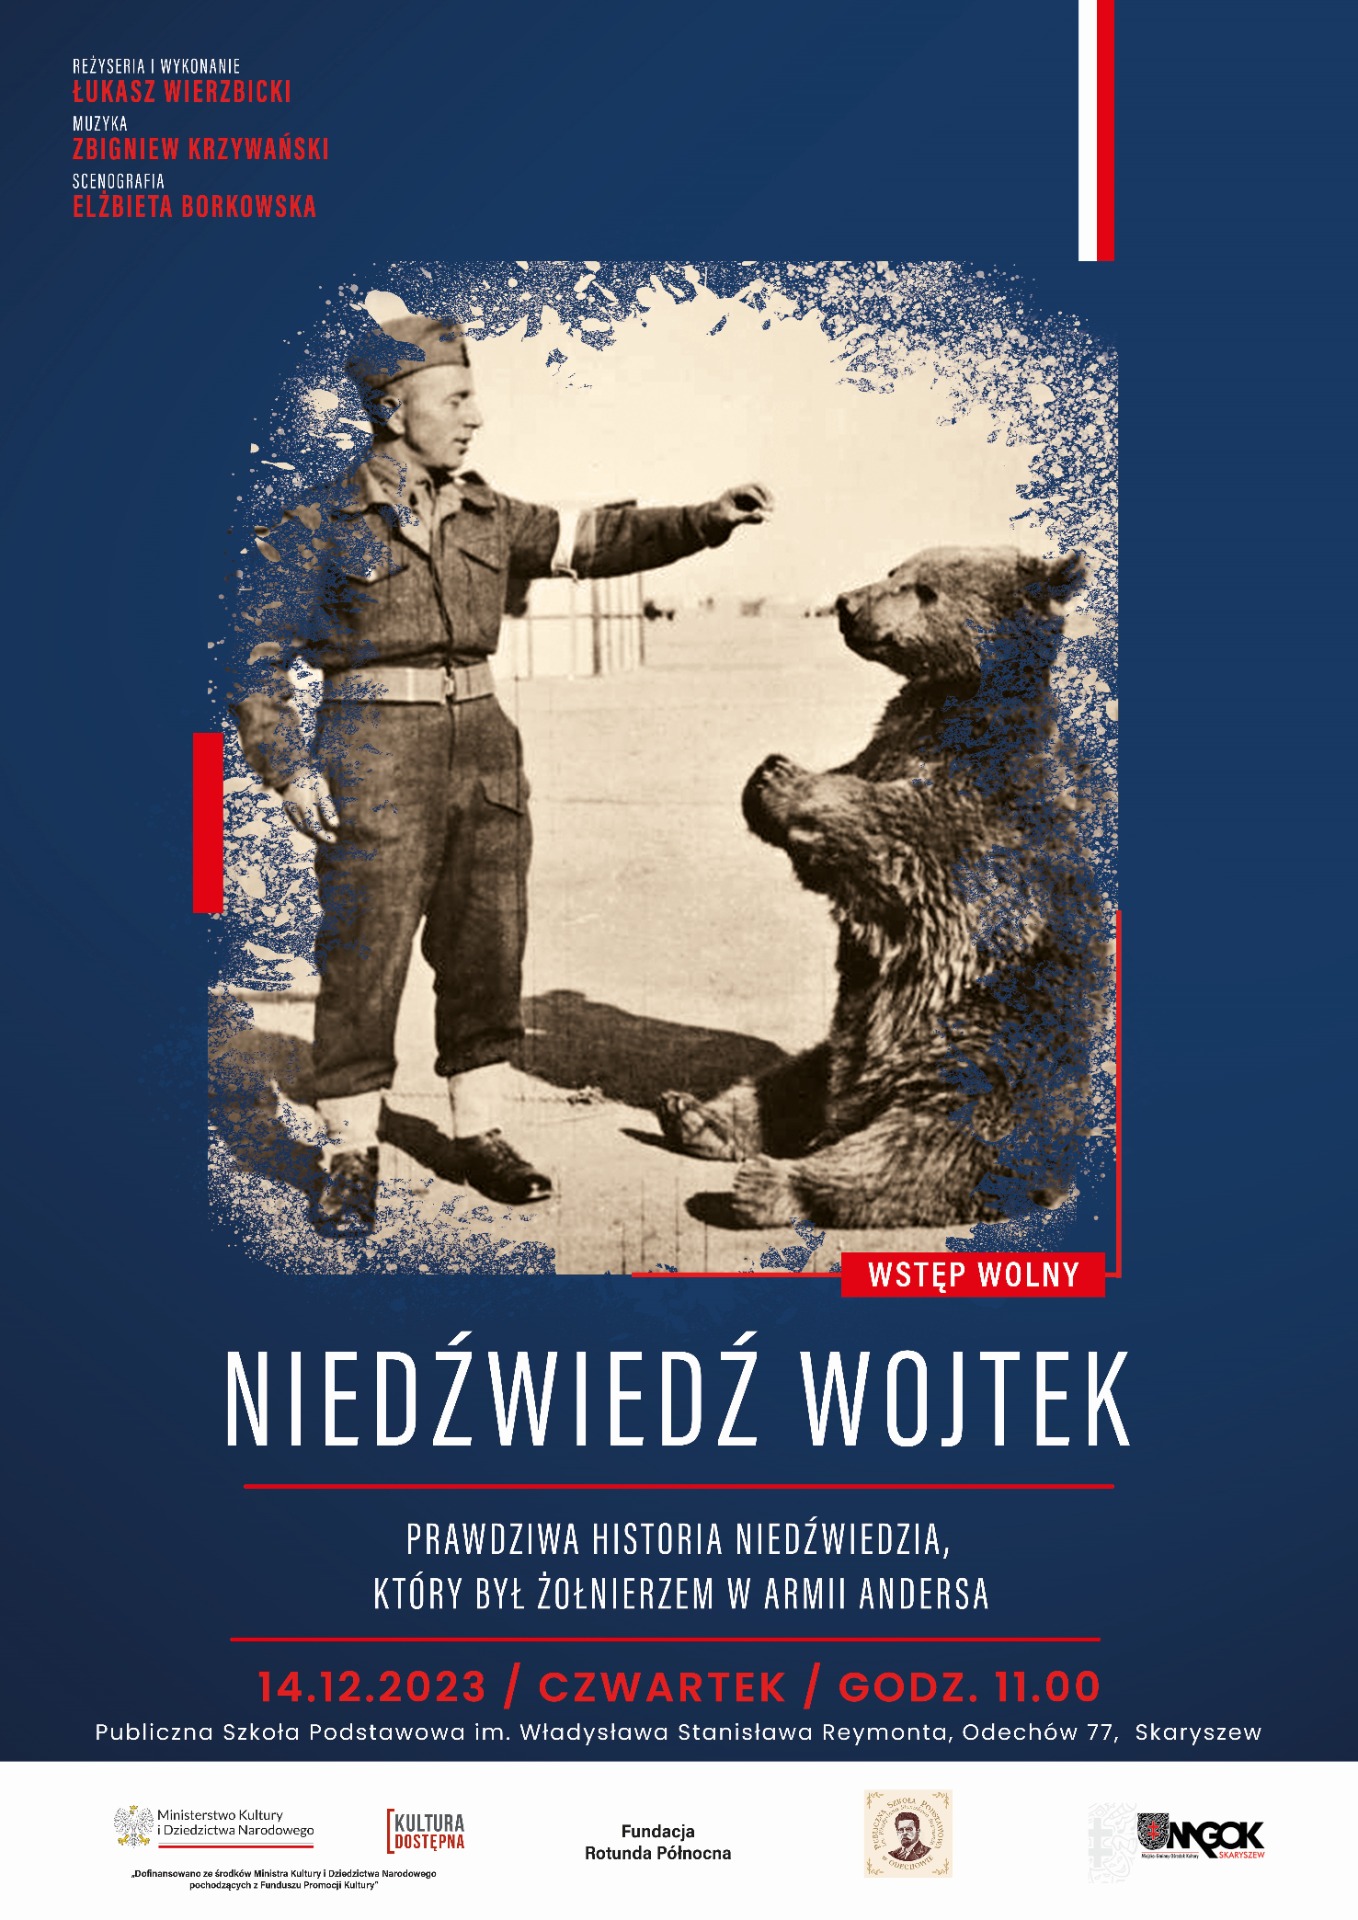 Grafika przedstawia plakat na którego treścią jest historia Niedźwiedzia, który był Żołnierzem w Armii Andersa. 